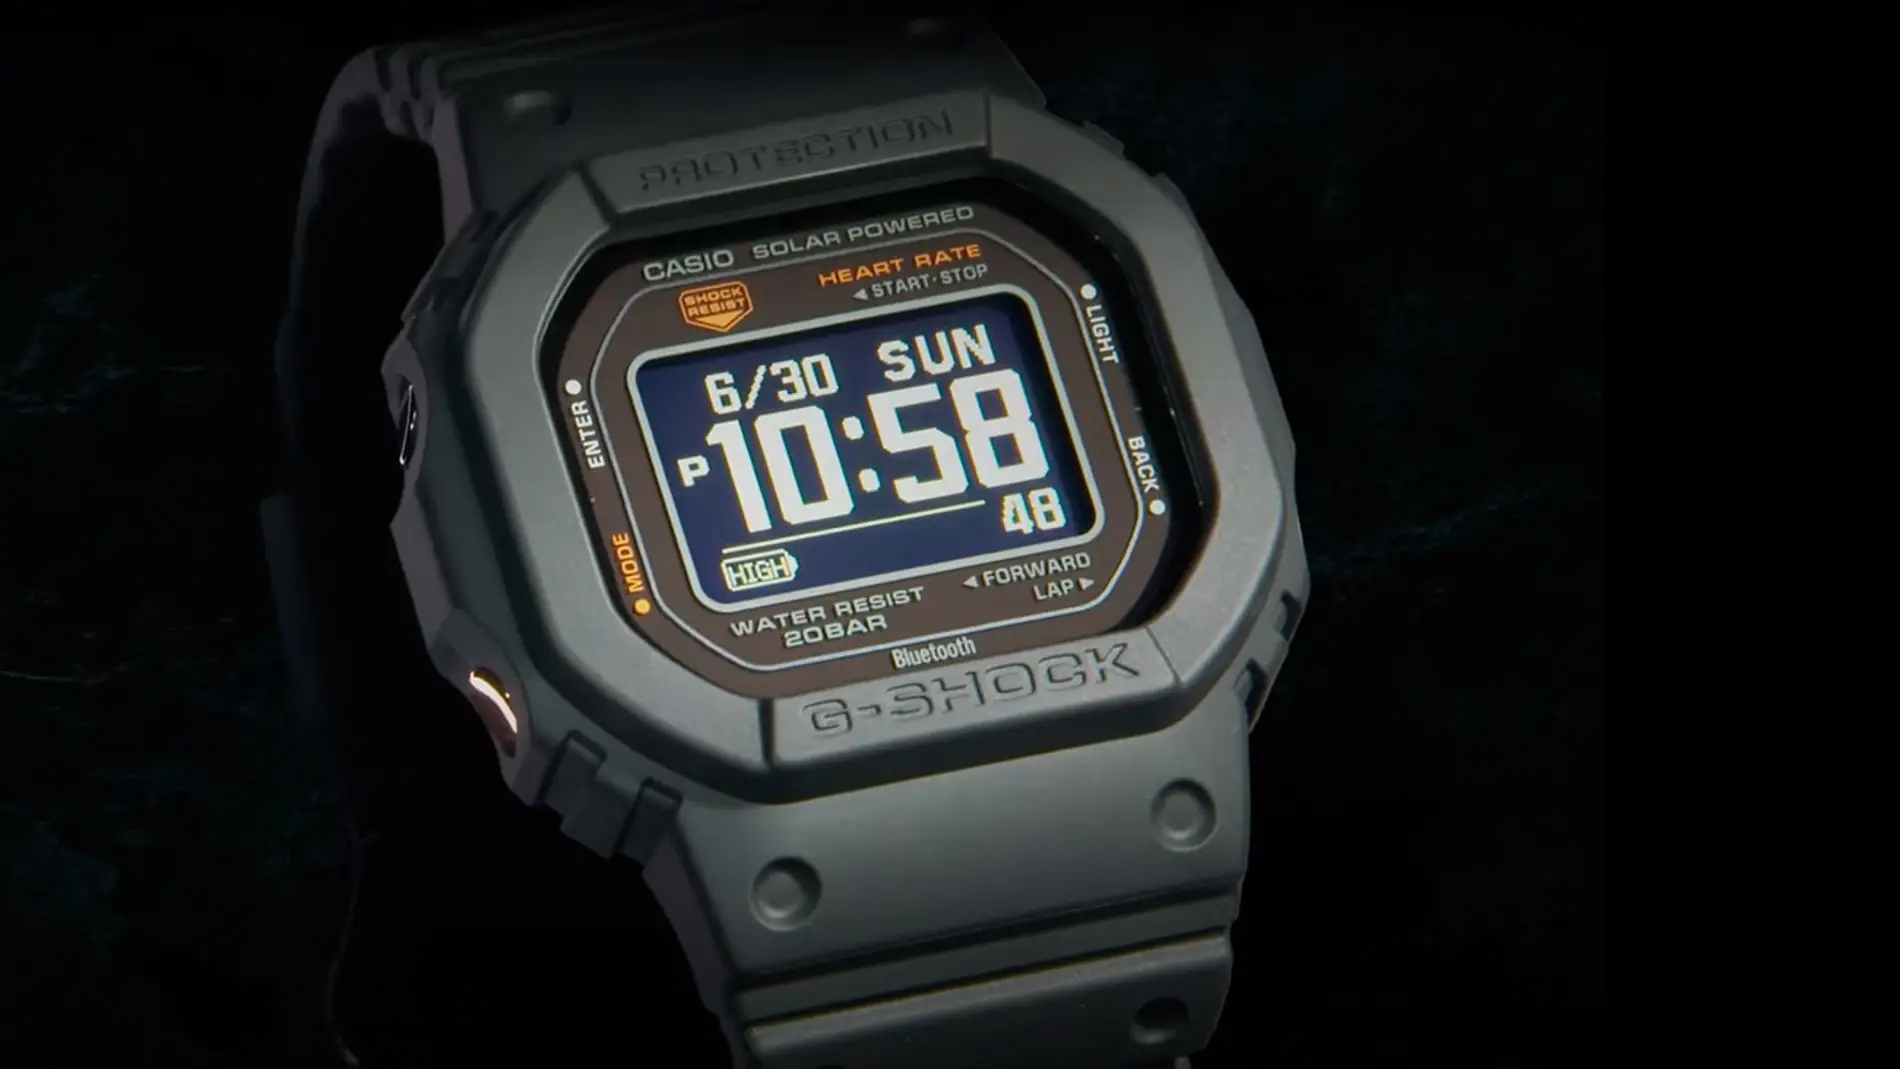 mayor Depresión Persona a cargo Casio presenta un nuevo reloj G-Shock con funciones inteligentes